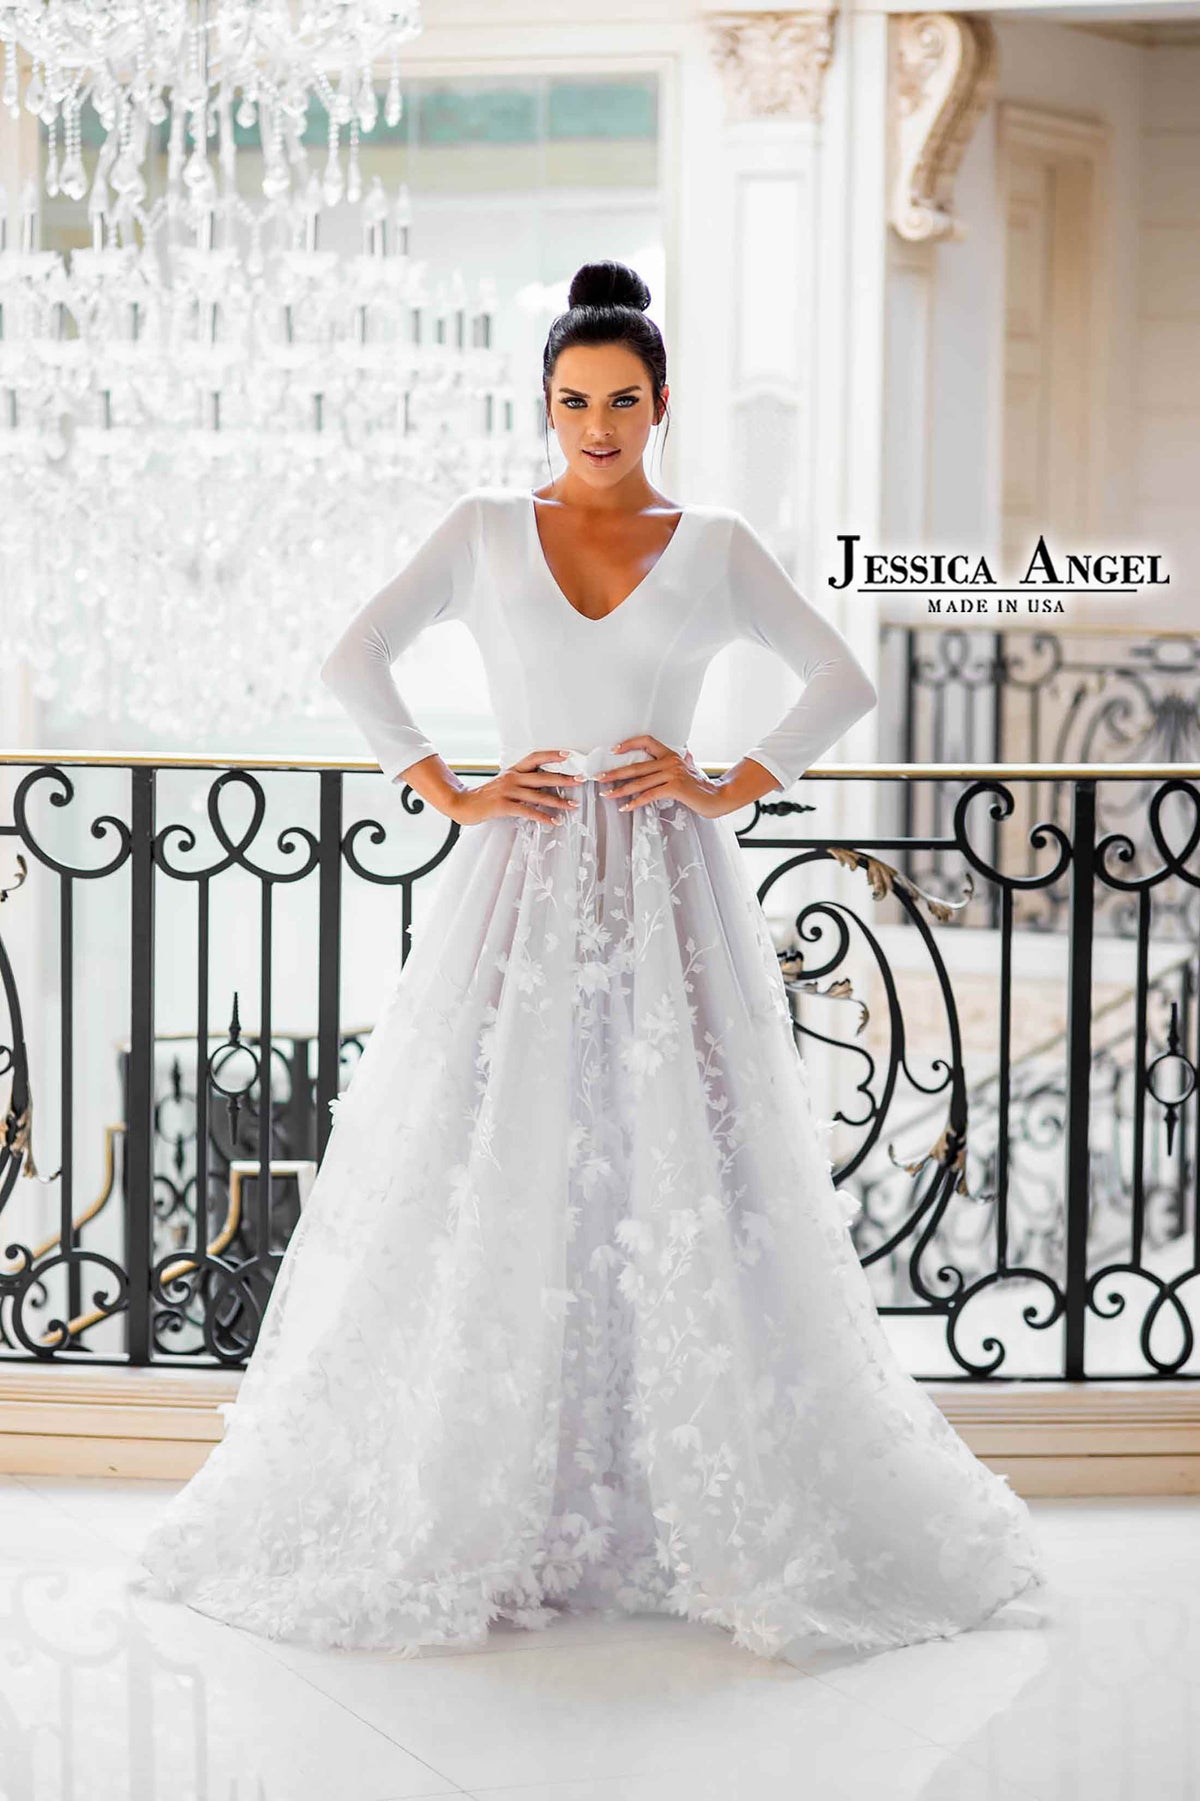 Jessica Angel 10036